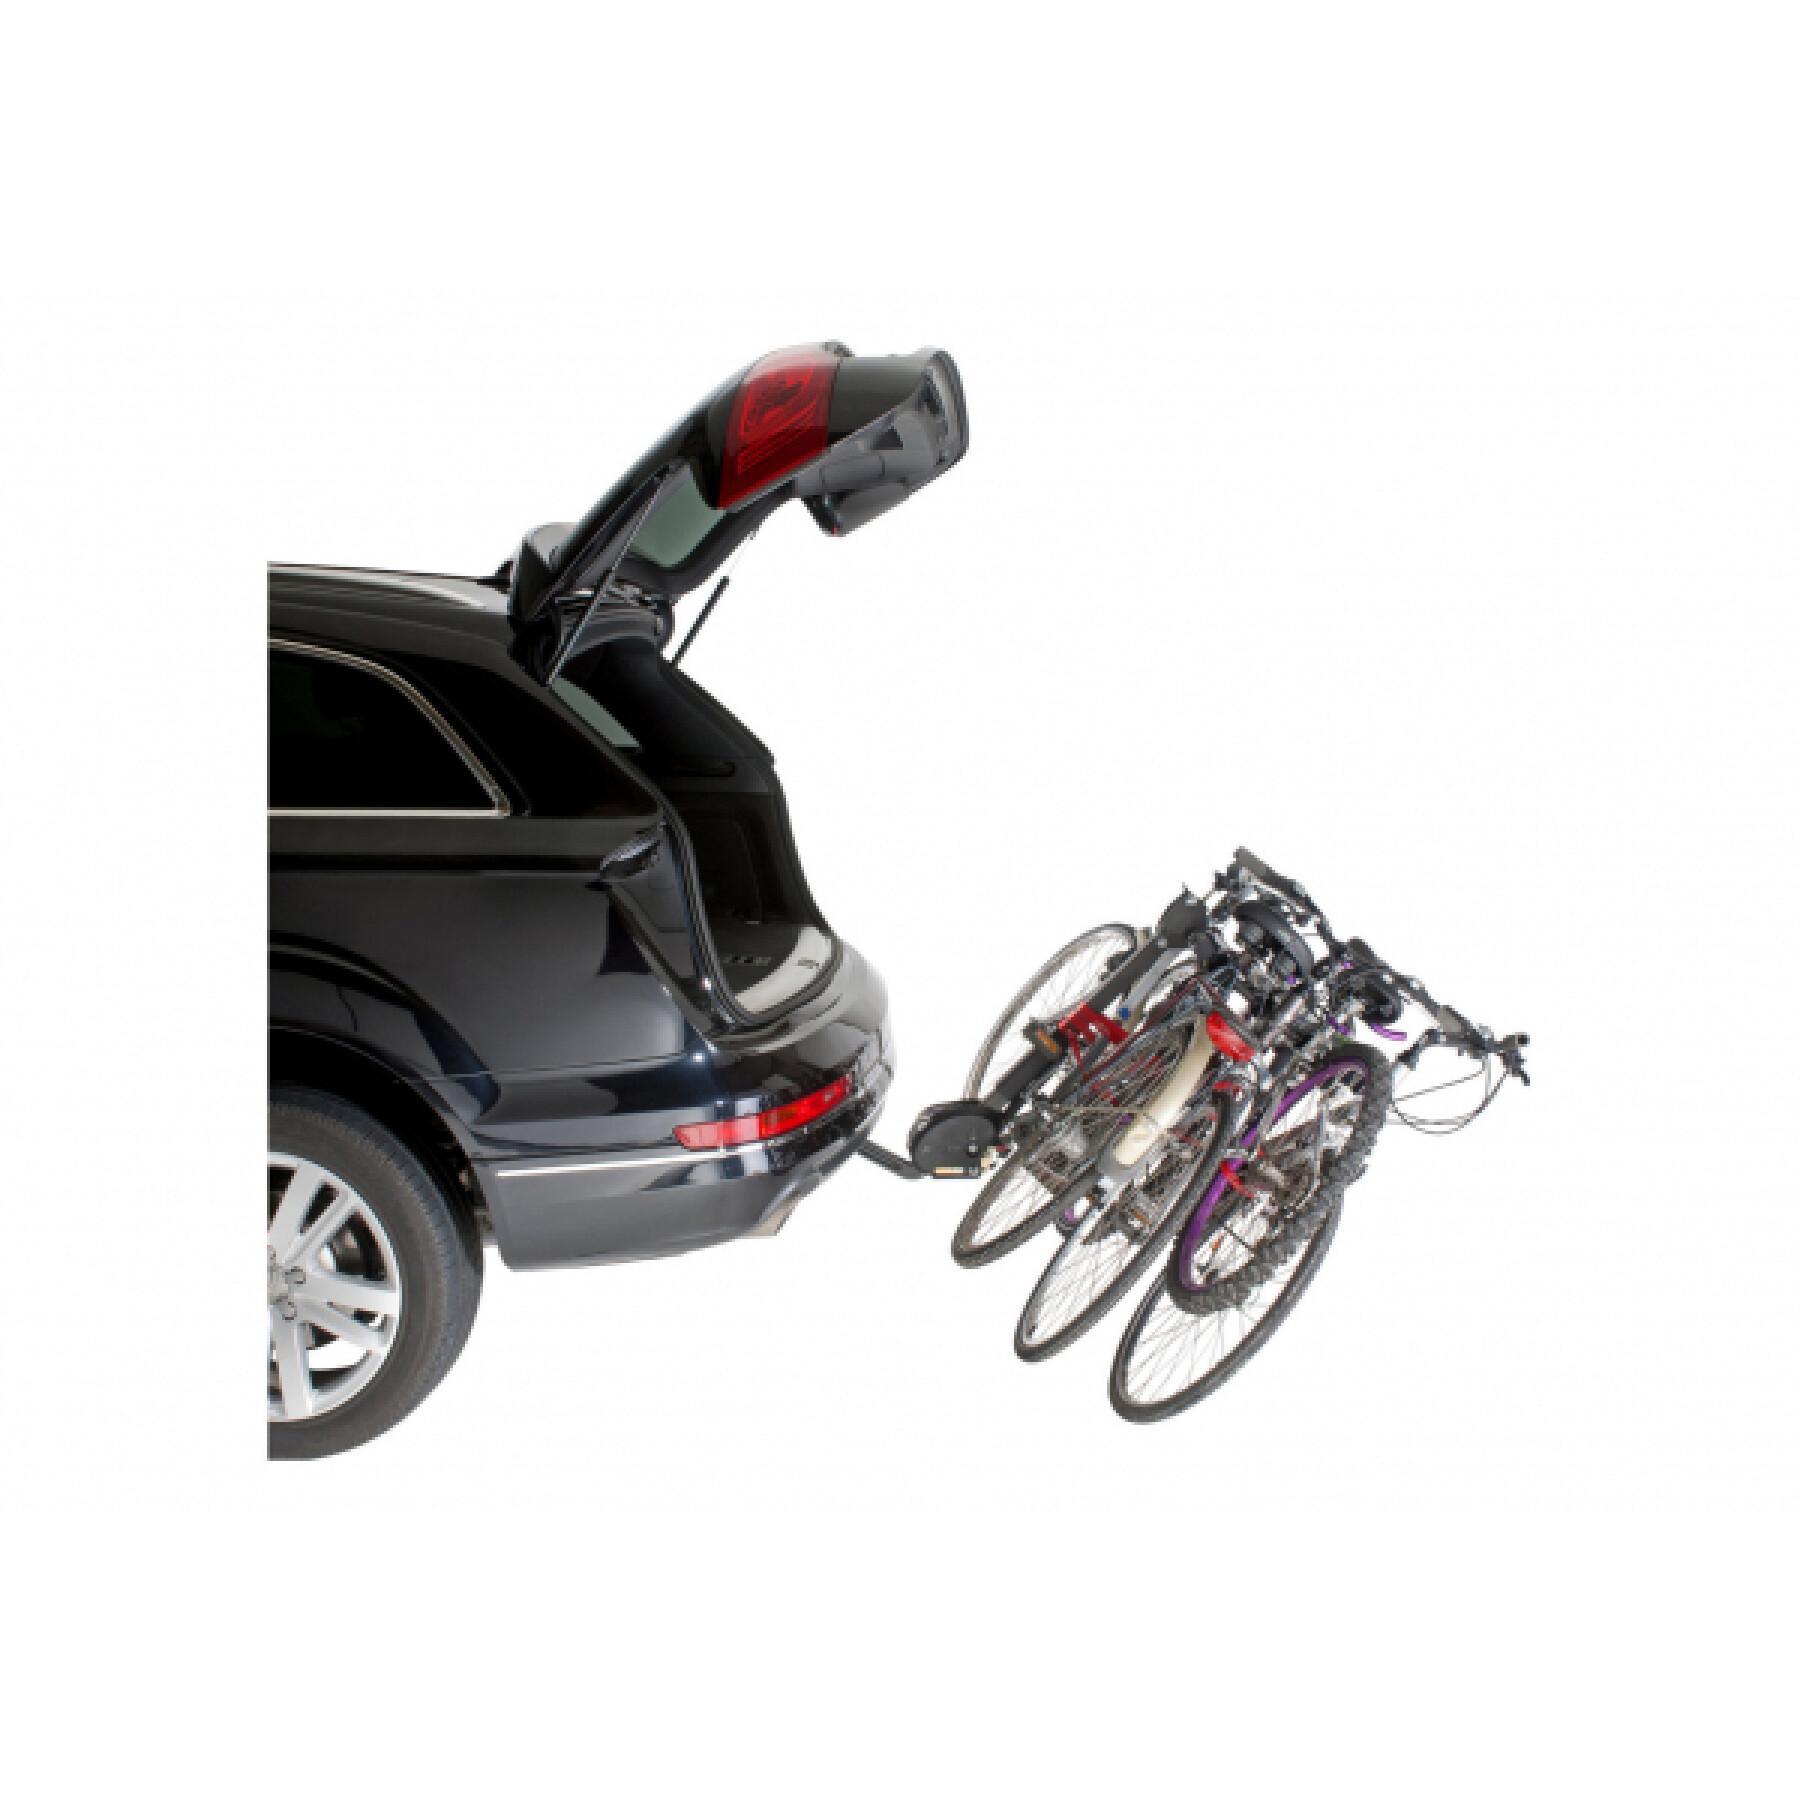 Upphängd cykelhållare för 4 cyklar, lutningsbar med stöldskydd, enkelt system för snabb montering - tillverkad i Frankrike Mottez Hercule homologue ce - 60 kgs